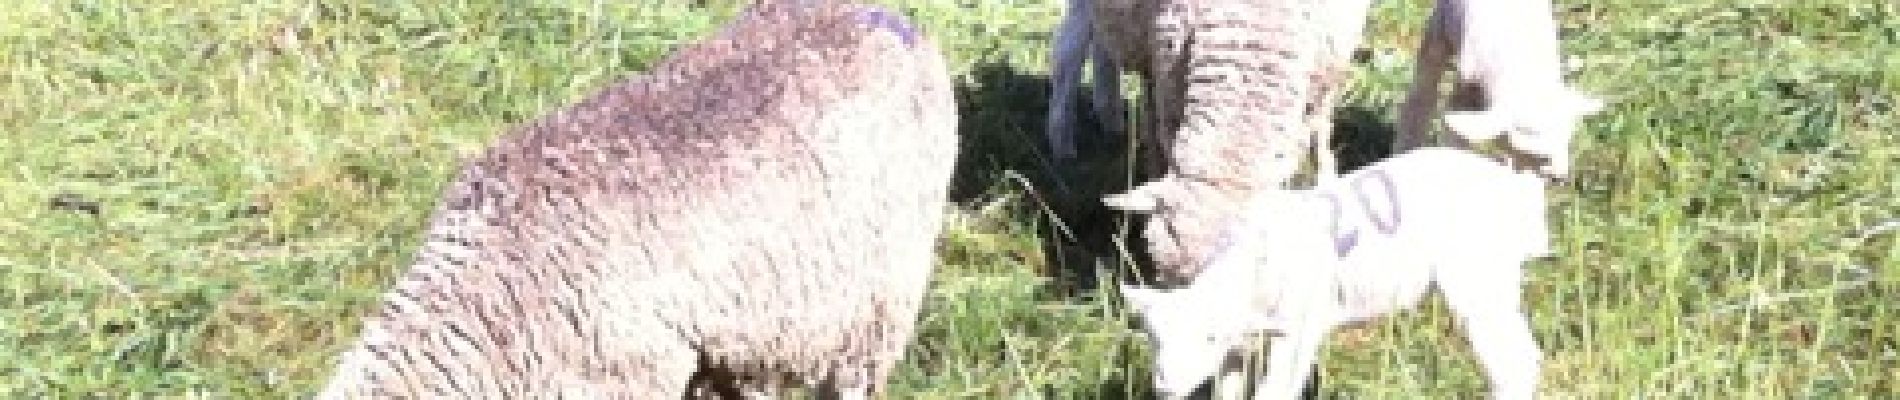 POI Ancelle - agneaux de lait - Photo